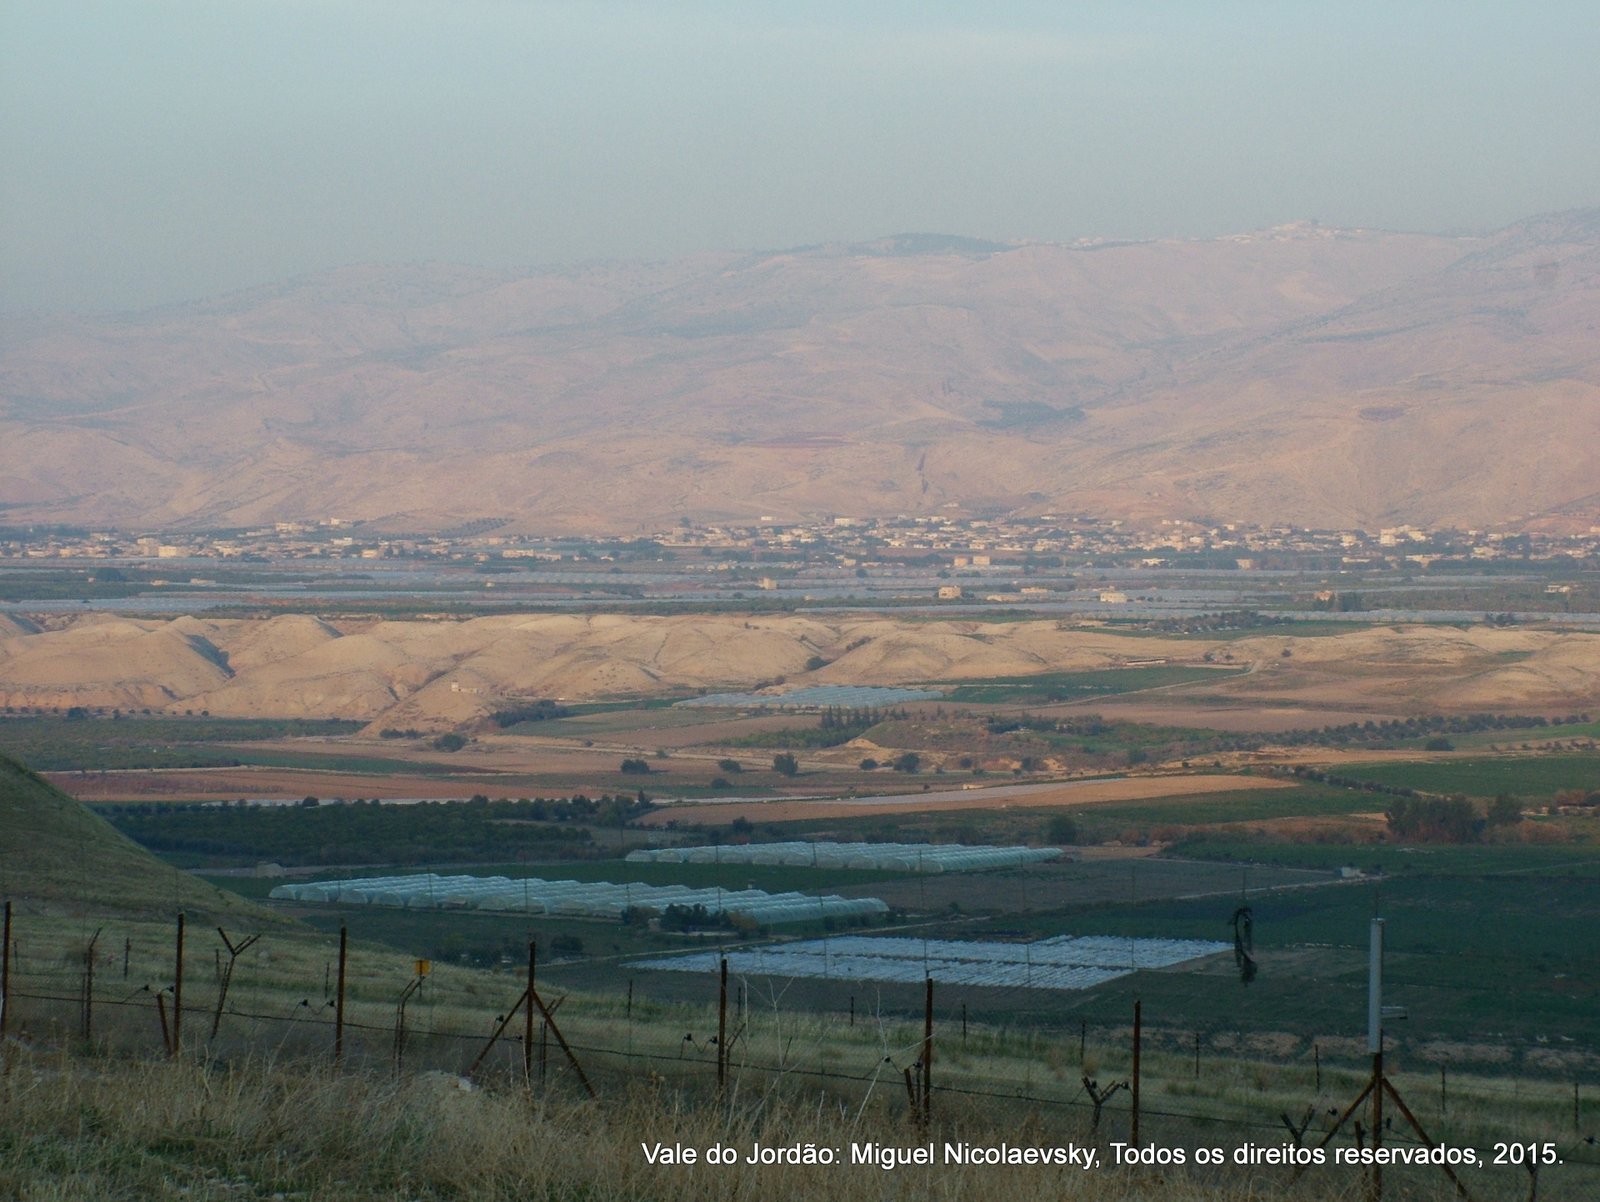 O Vale do Jordão, o Berço da Civilização Mundial